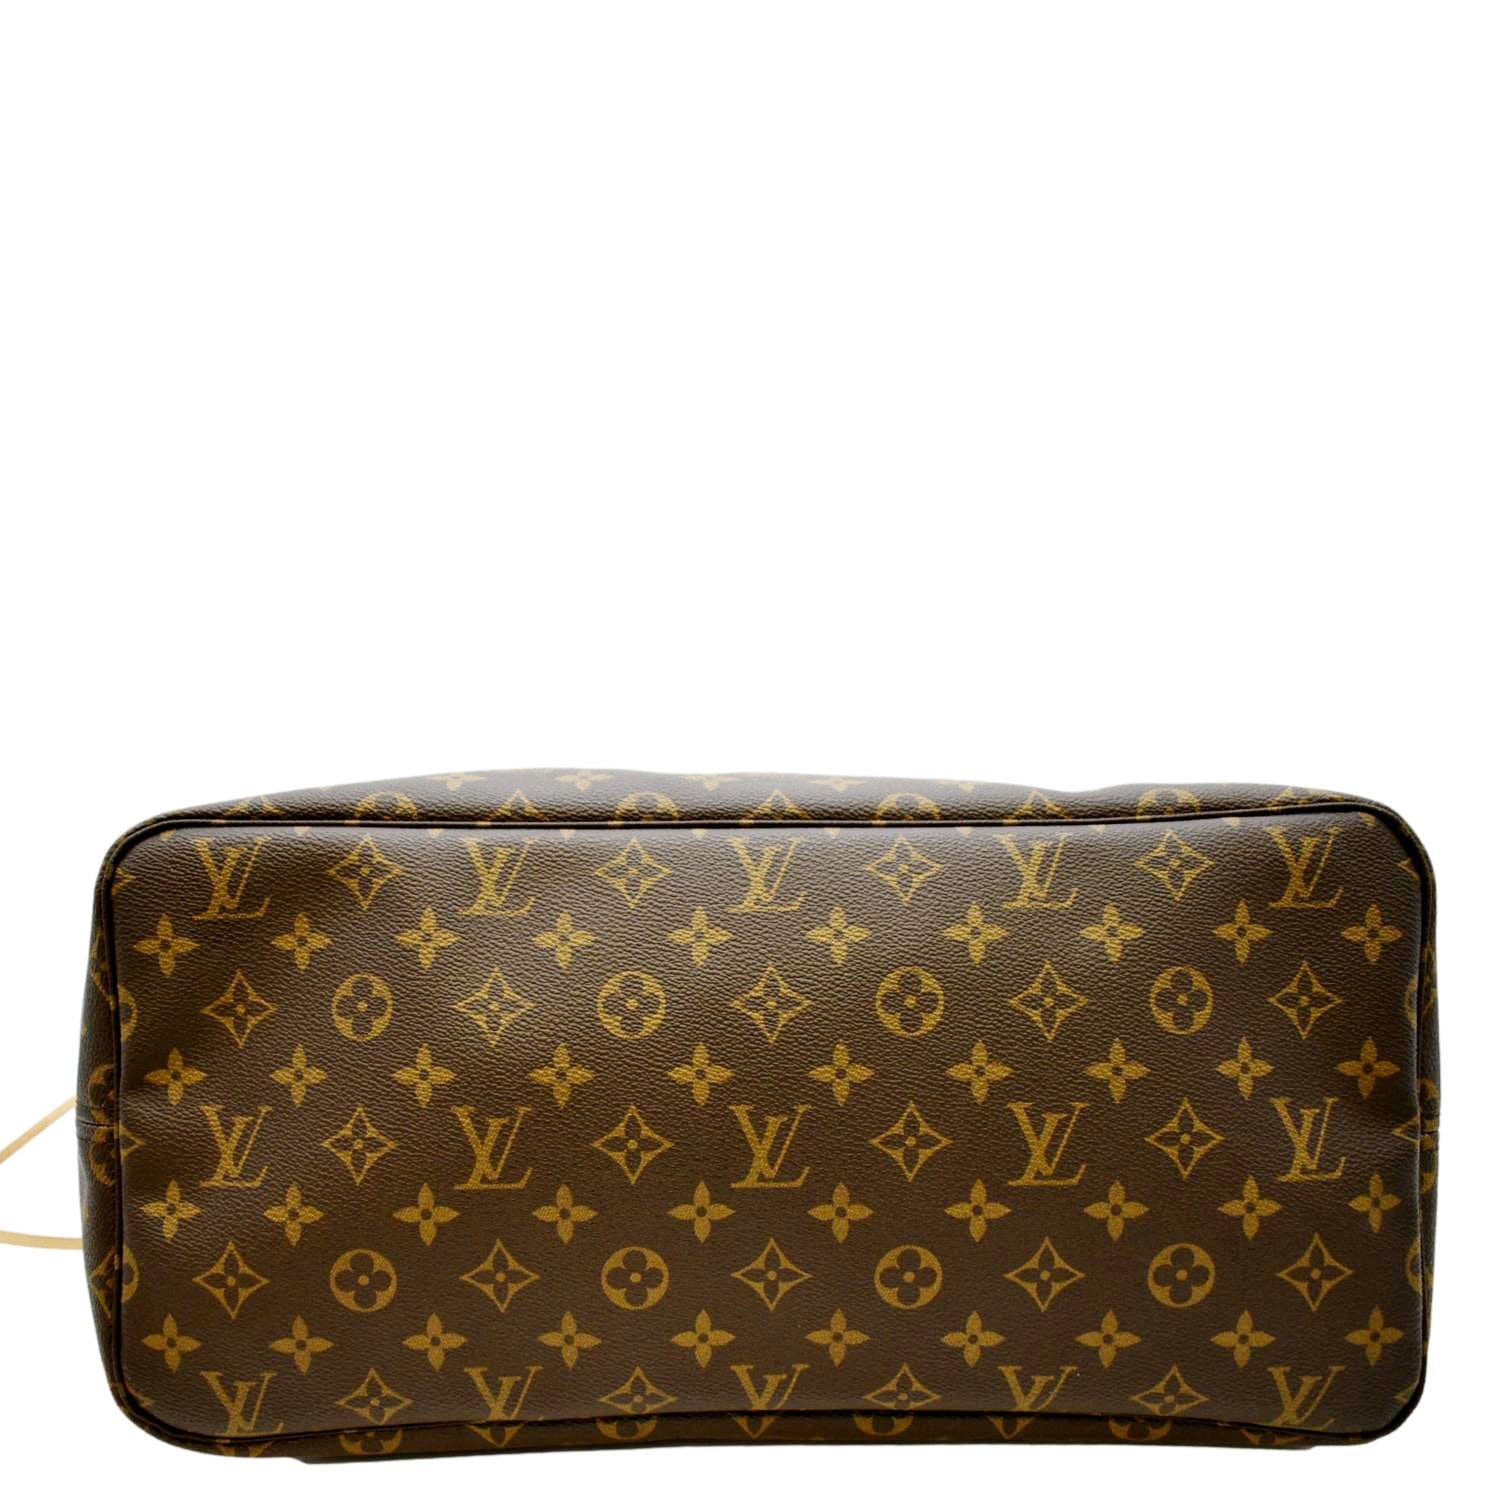 [Authentic LOUIS VUITTON Purse] Classic LV Logo Brown Leather Handbag 